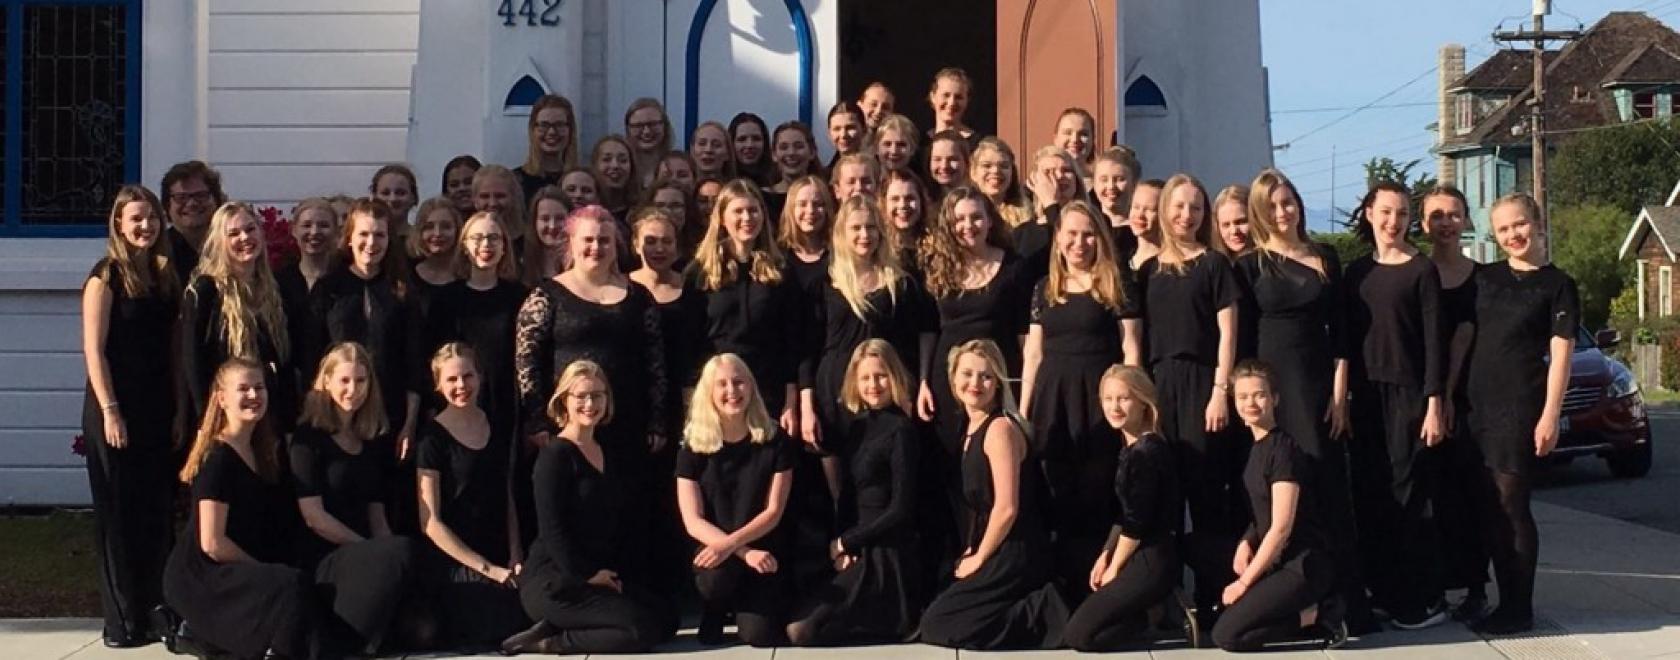 Sibelius-lukion tyttökuoro matkusti huhtikuussa San Franciscoon konsertoimaan ja tekemään yhteistyötä paikallisen Girls Chorus -kuoron kanssa.